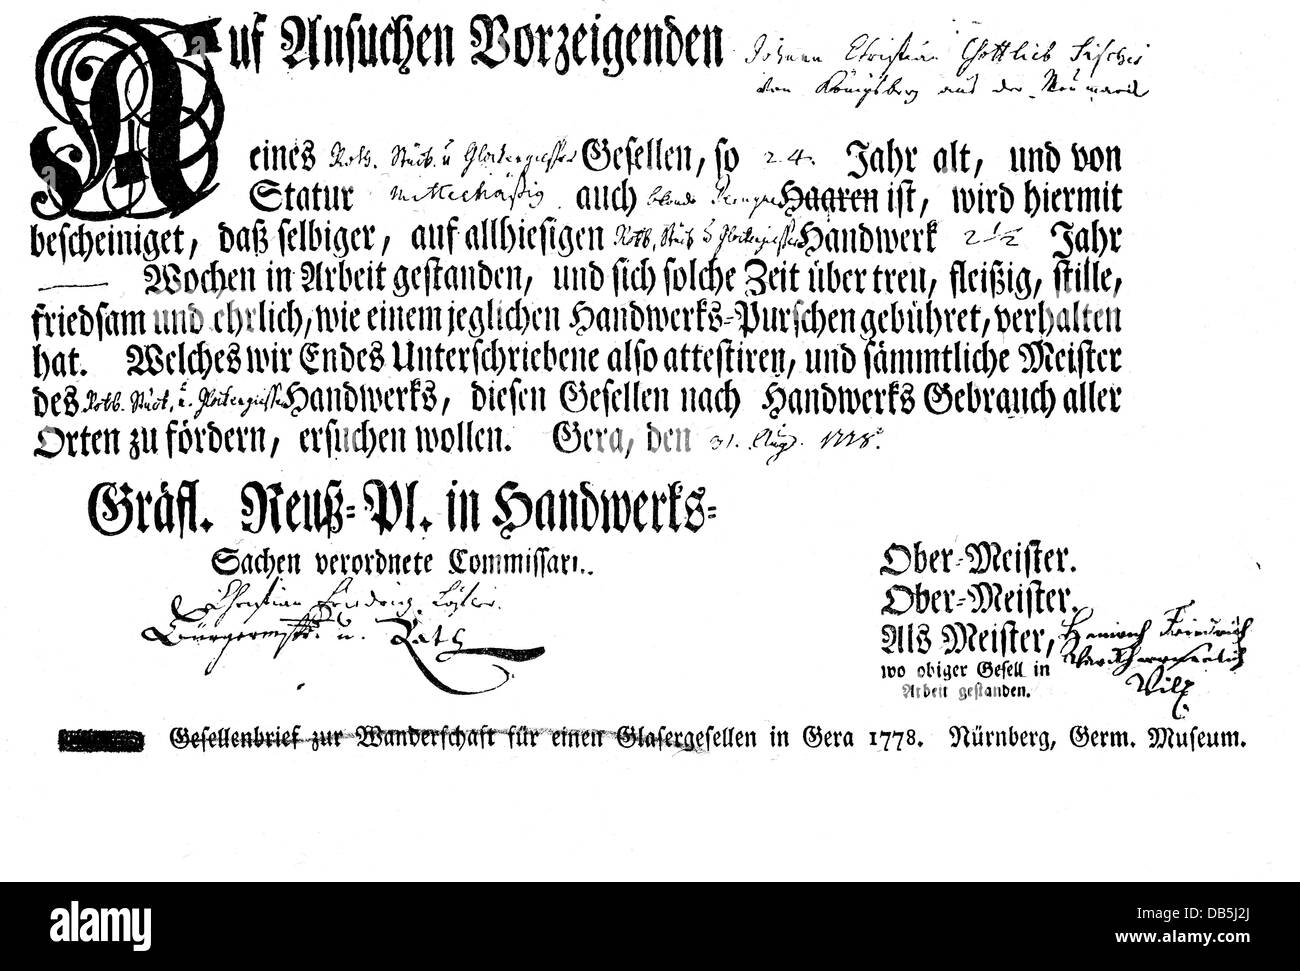 Artisanat, documents, certificat de compagnon pour un vitrier compagnon, Gera, 1778, droits additionnels-Clearences-non disponible Banque D'Images